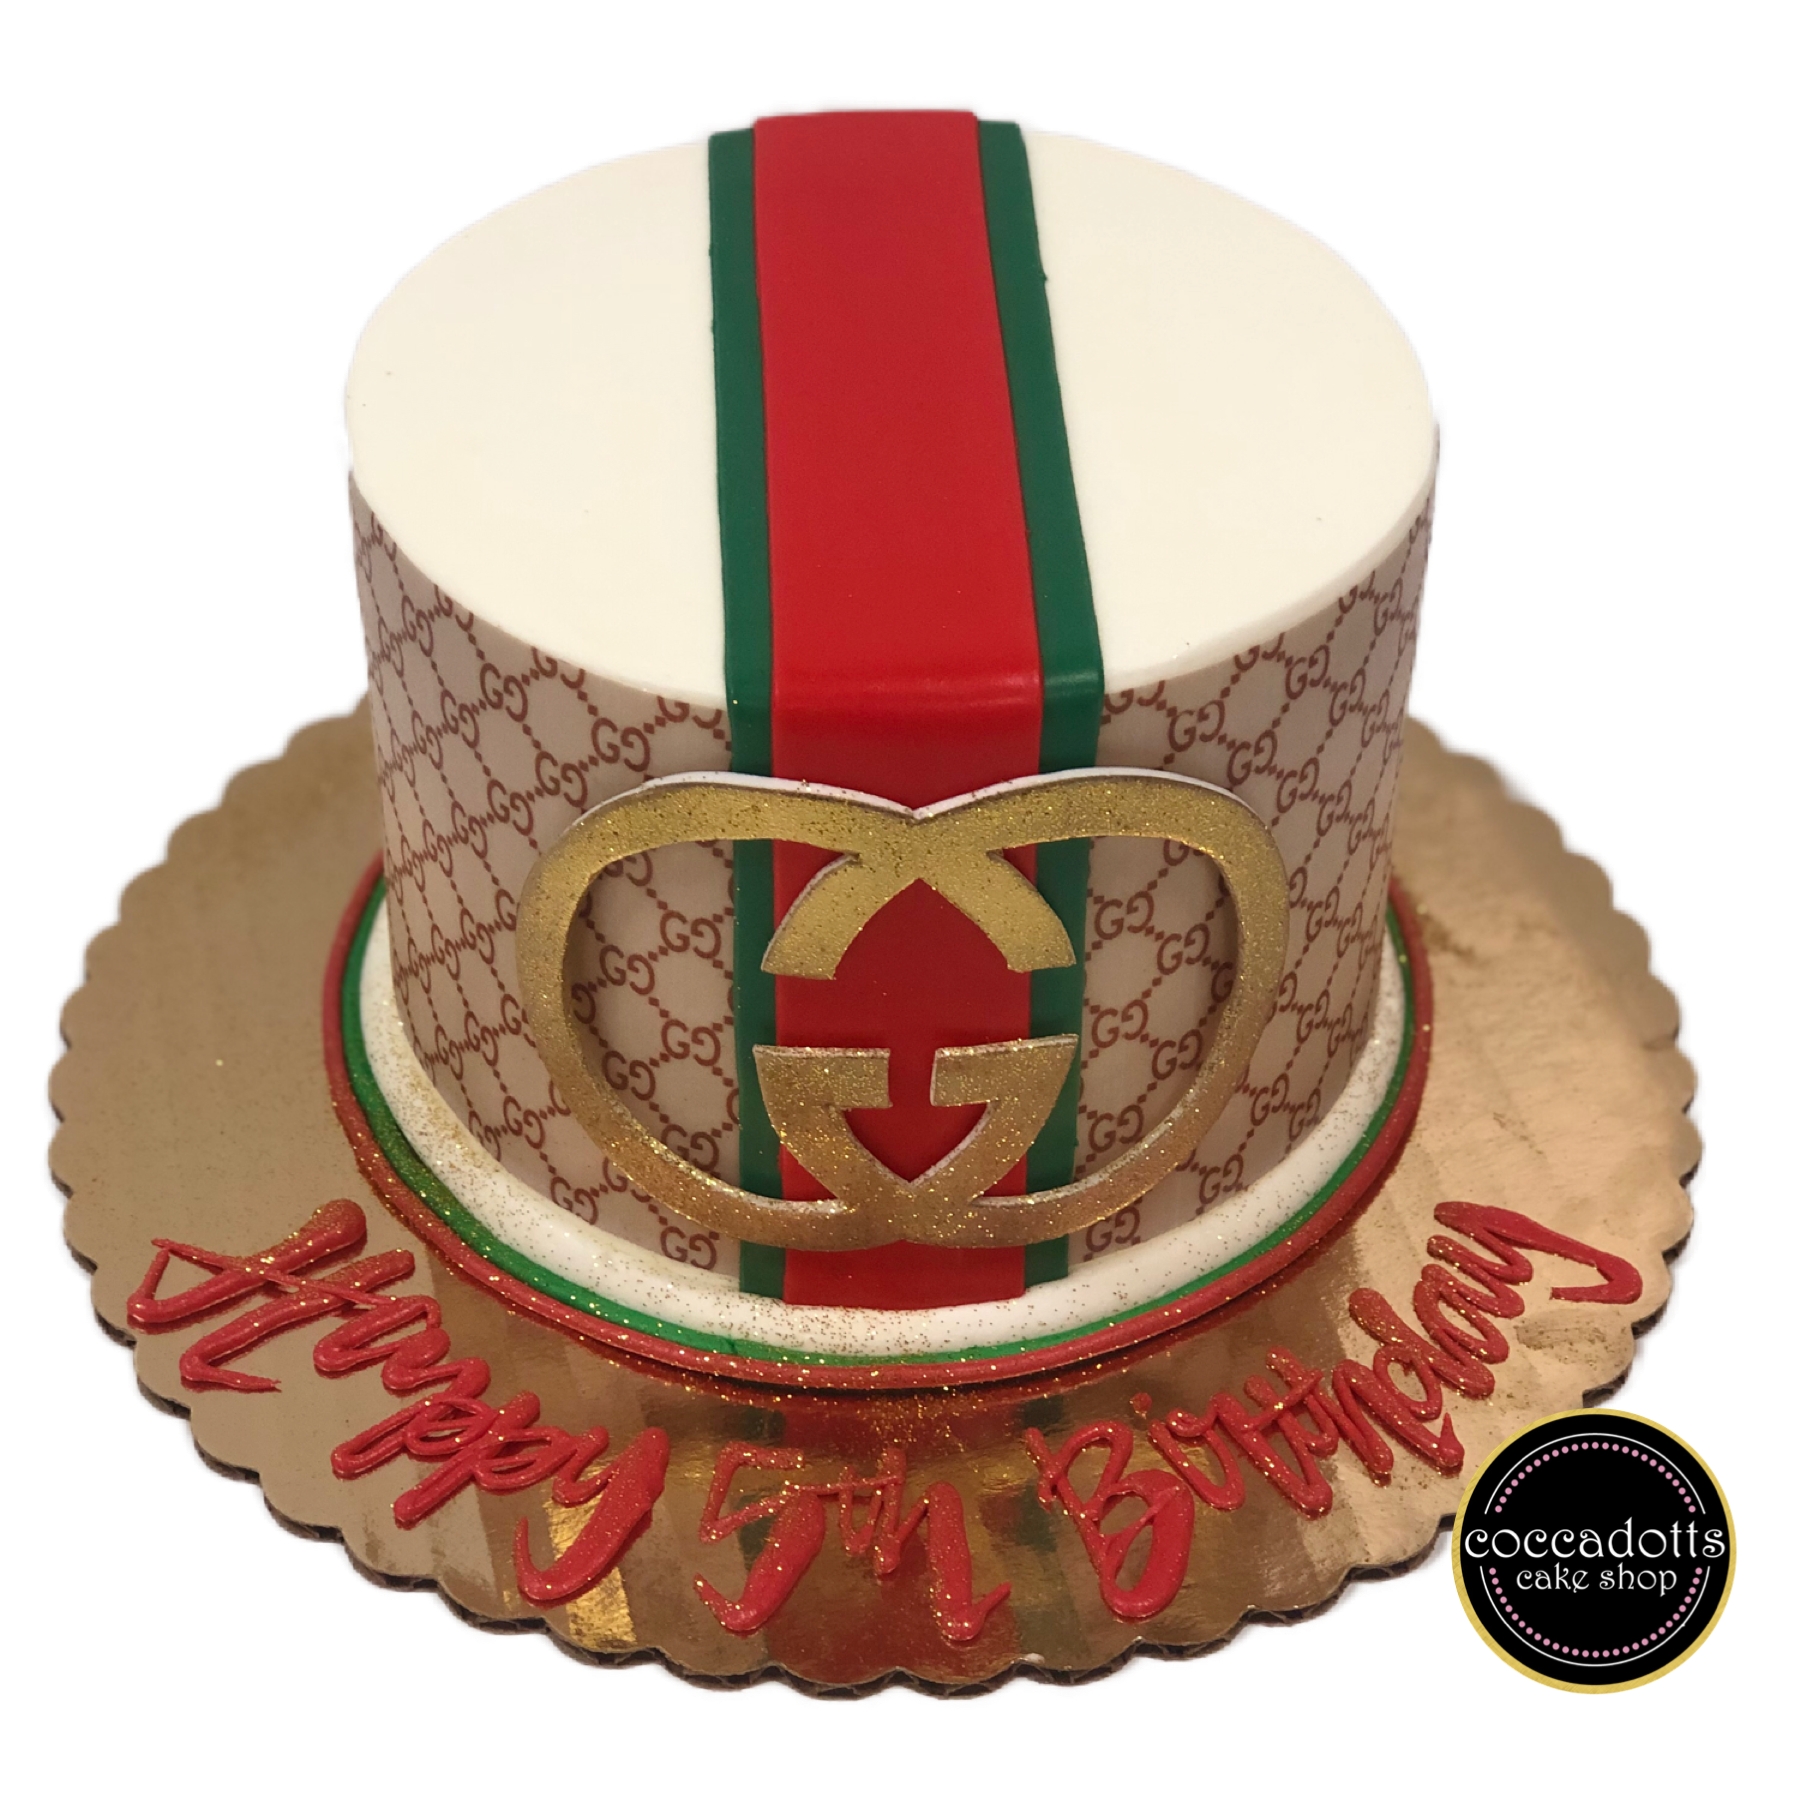 Gucci Cake - Single Tier-1065